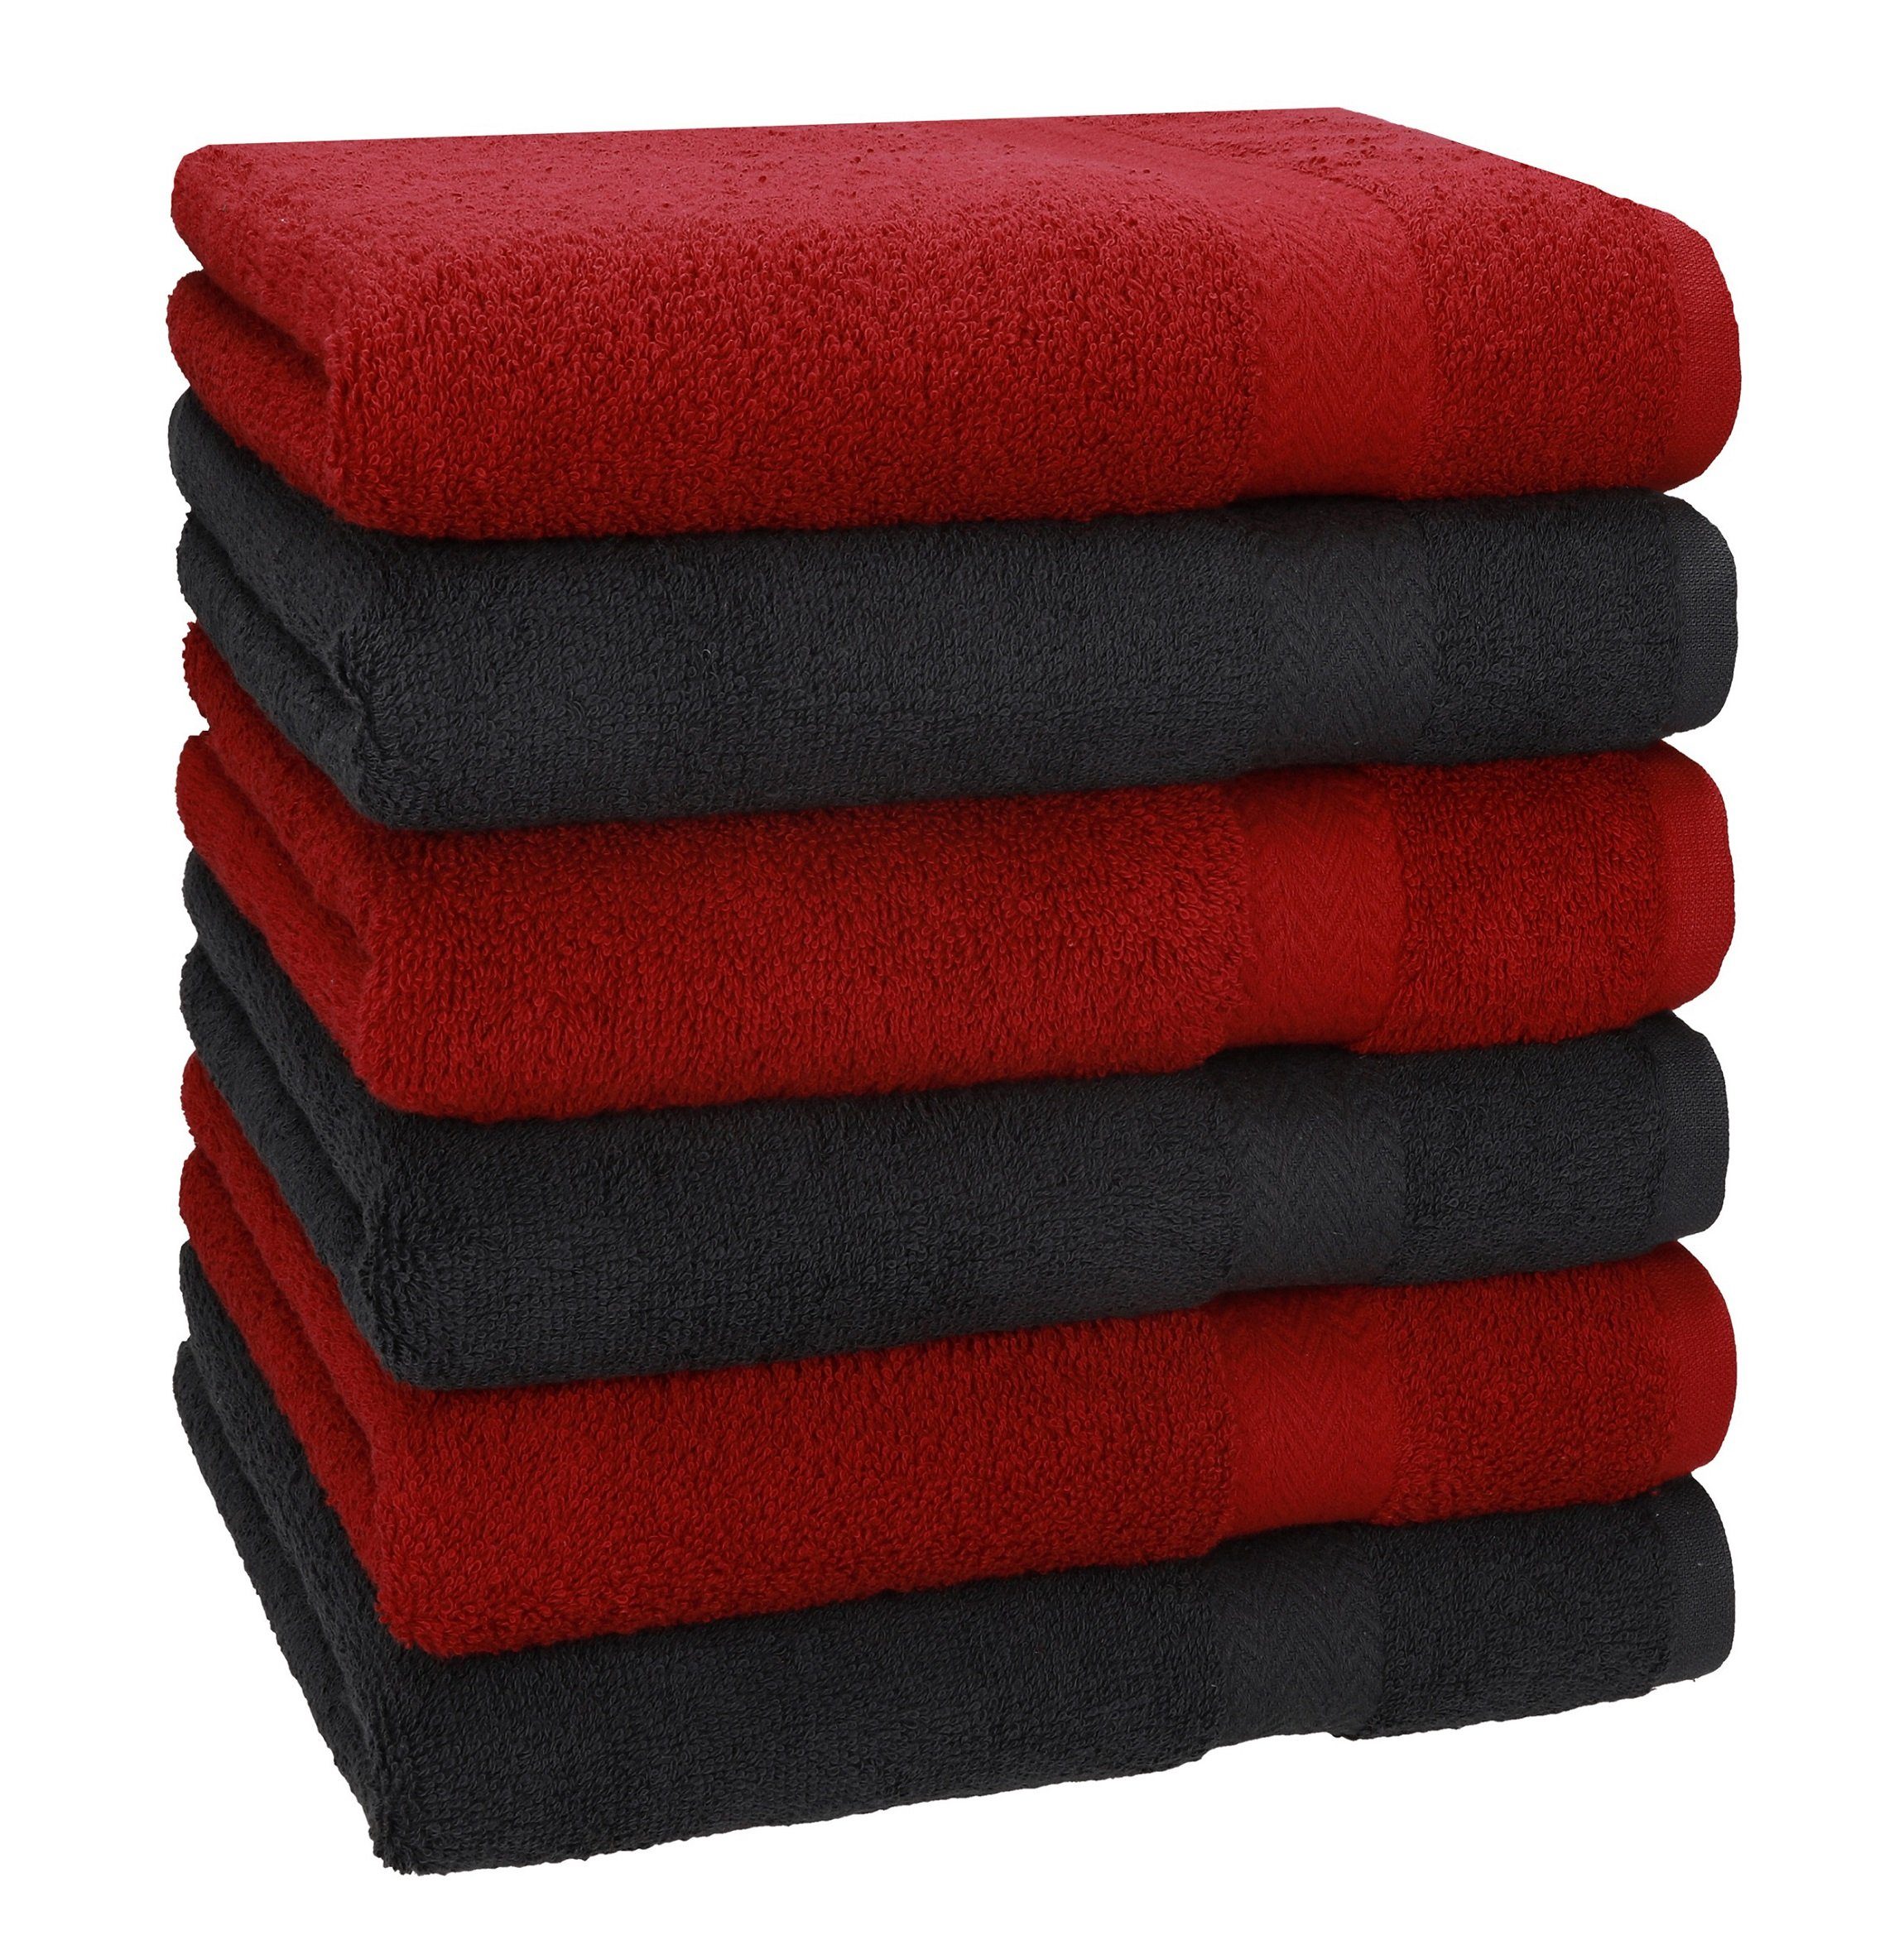 Betz Handtücher 6 Stück Handtücher Größe 50 x 100 cm Premium Handtuch Set 100% Baumwolle Farbe rubinrot/Graphit Grau, 100% Baumwolle (6-St)